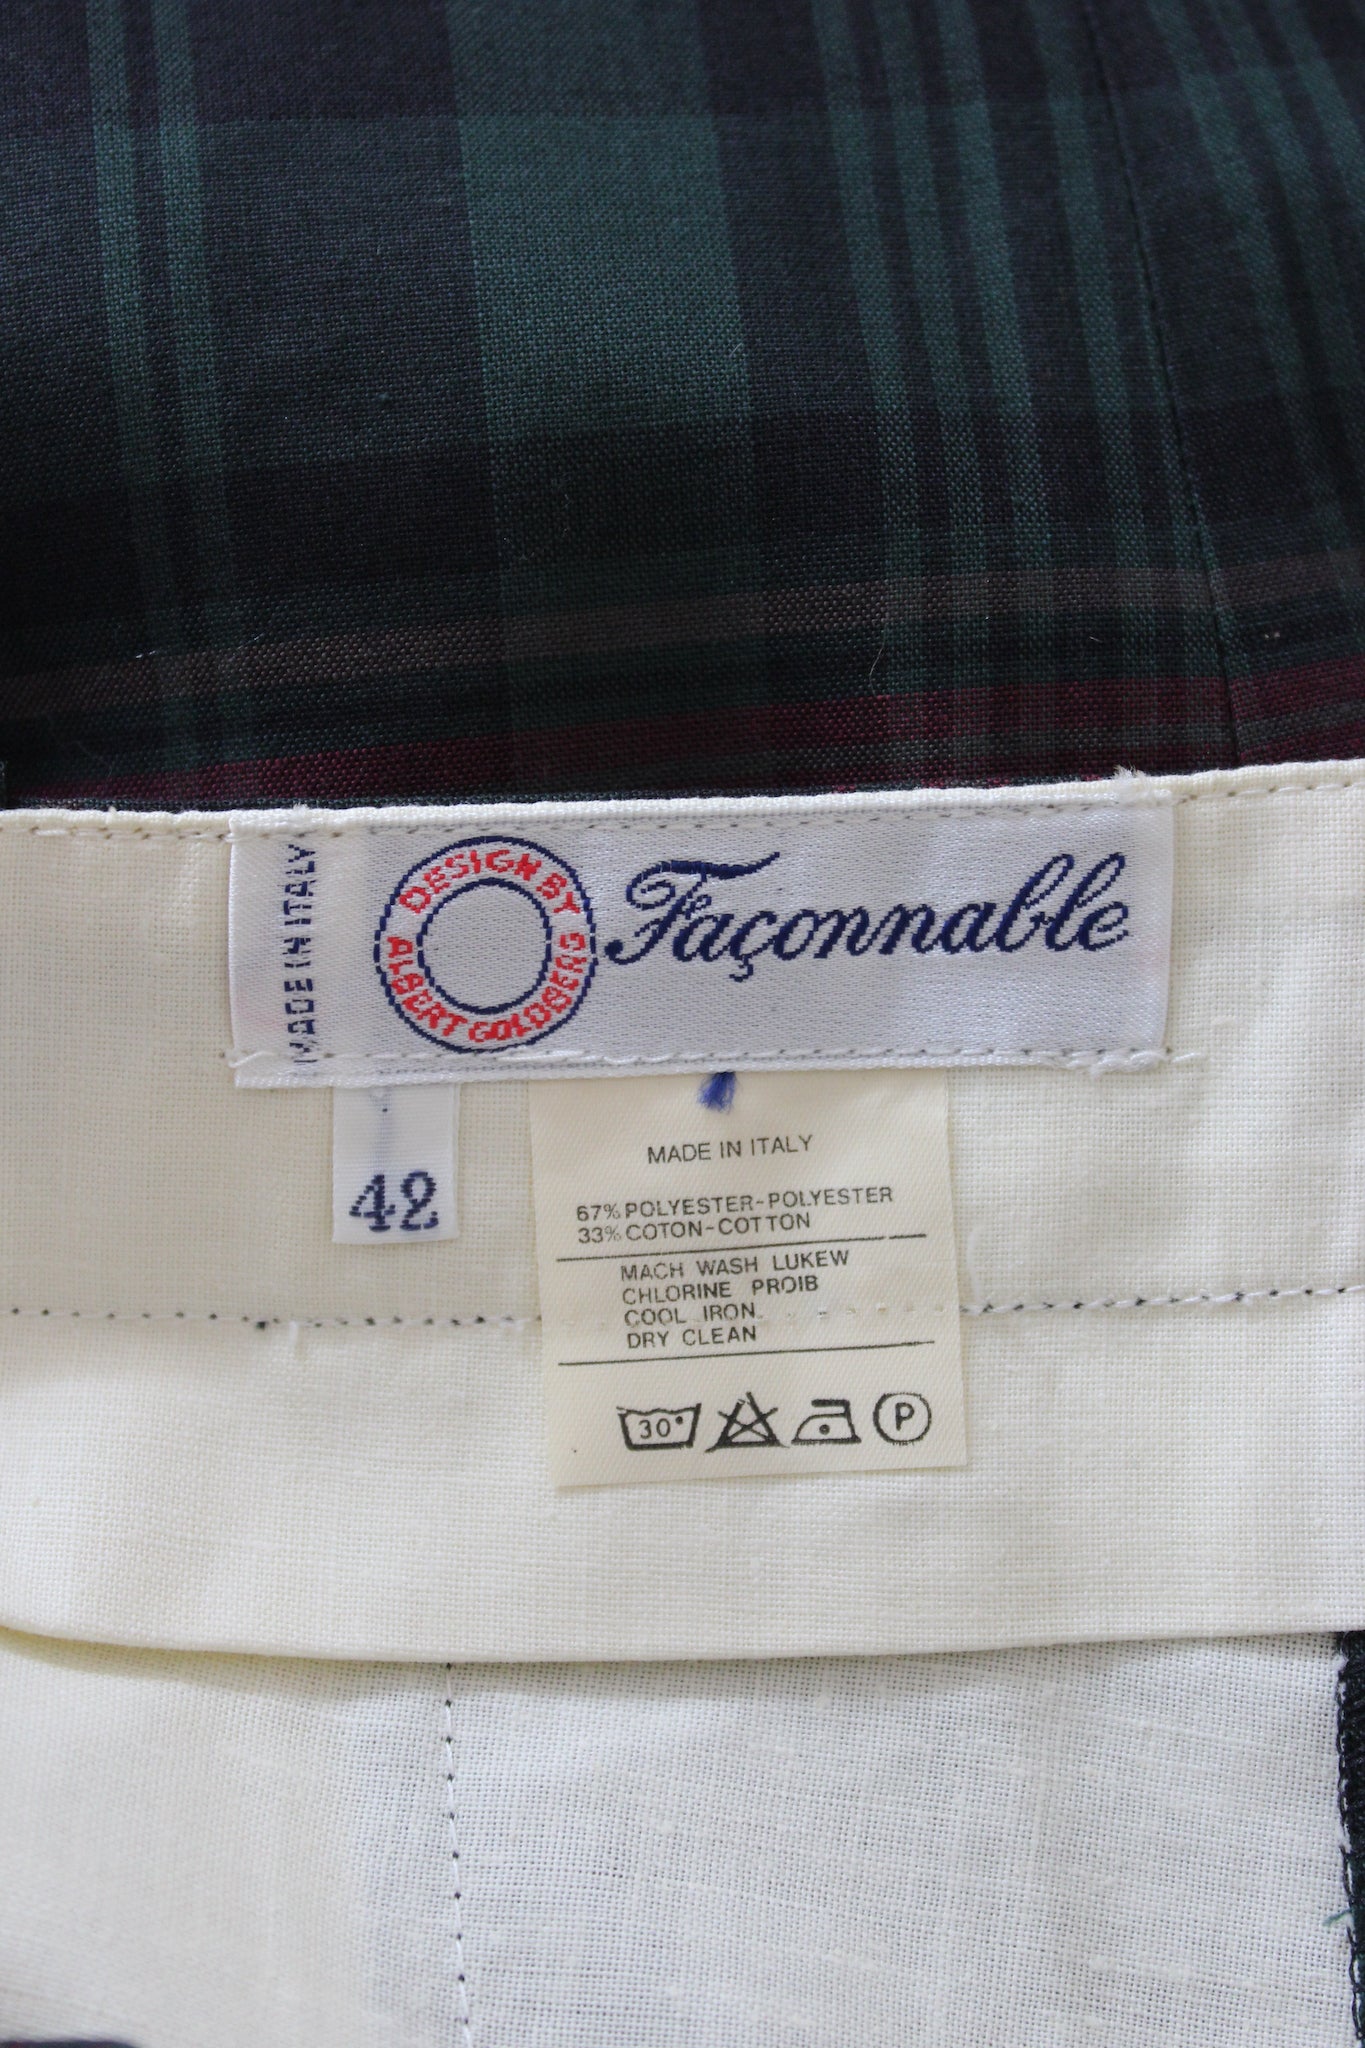 Pantaloni Faconnable Verde Rosso Cotone Vintage Check Tg 42